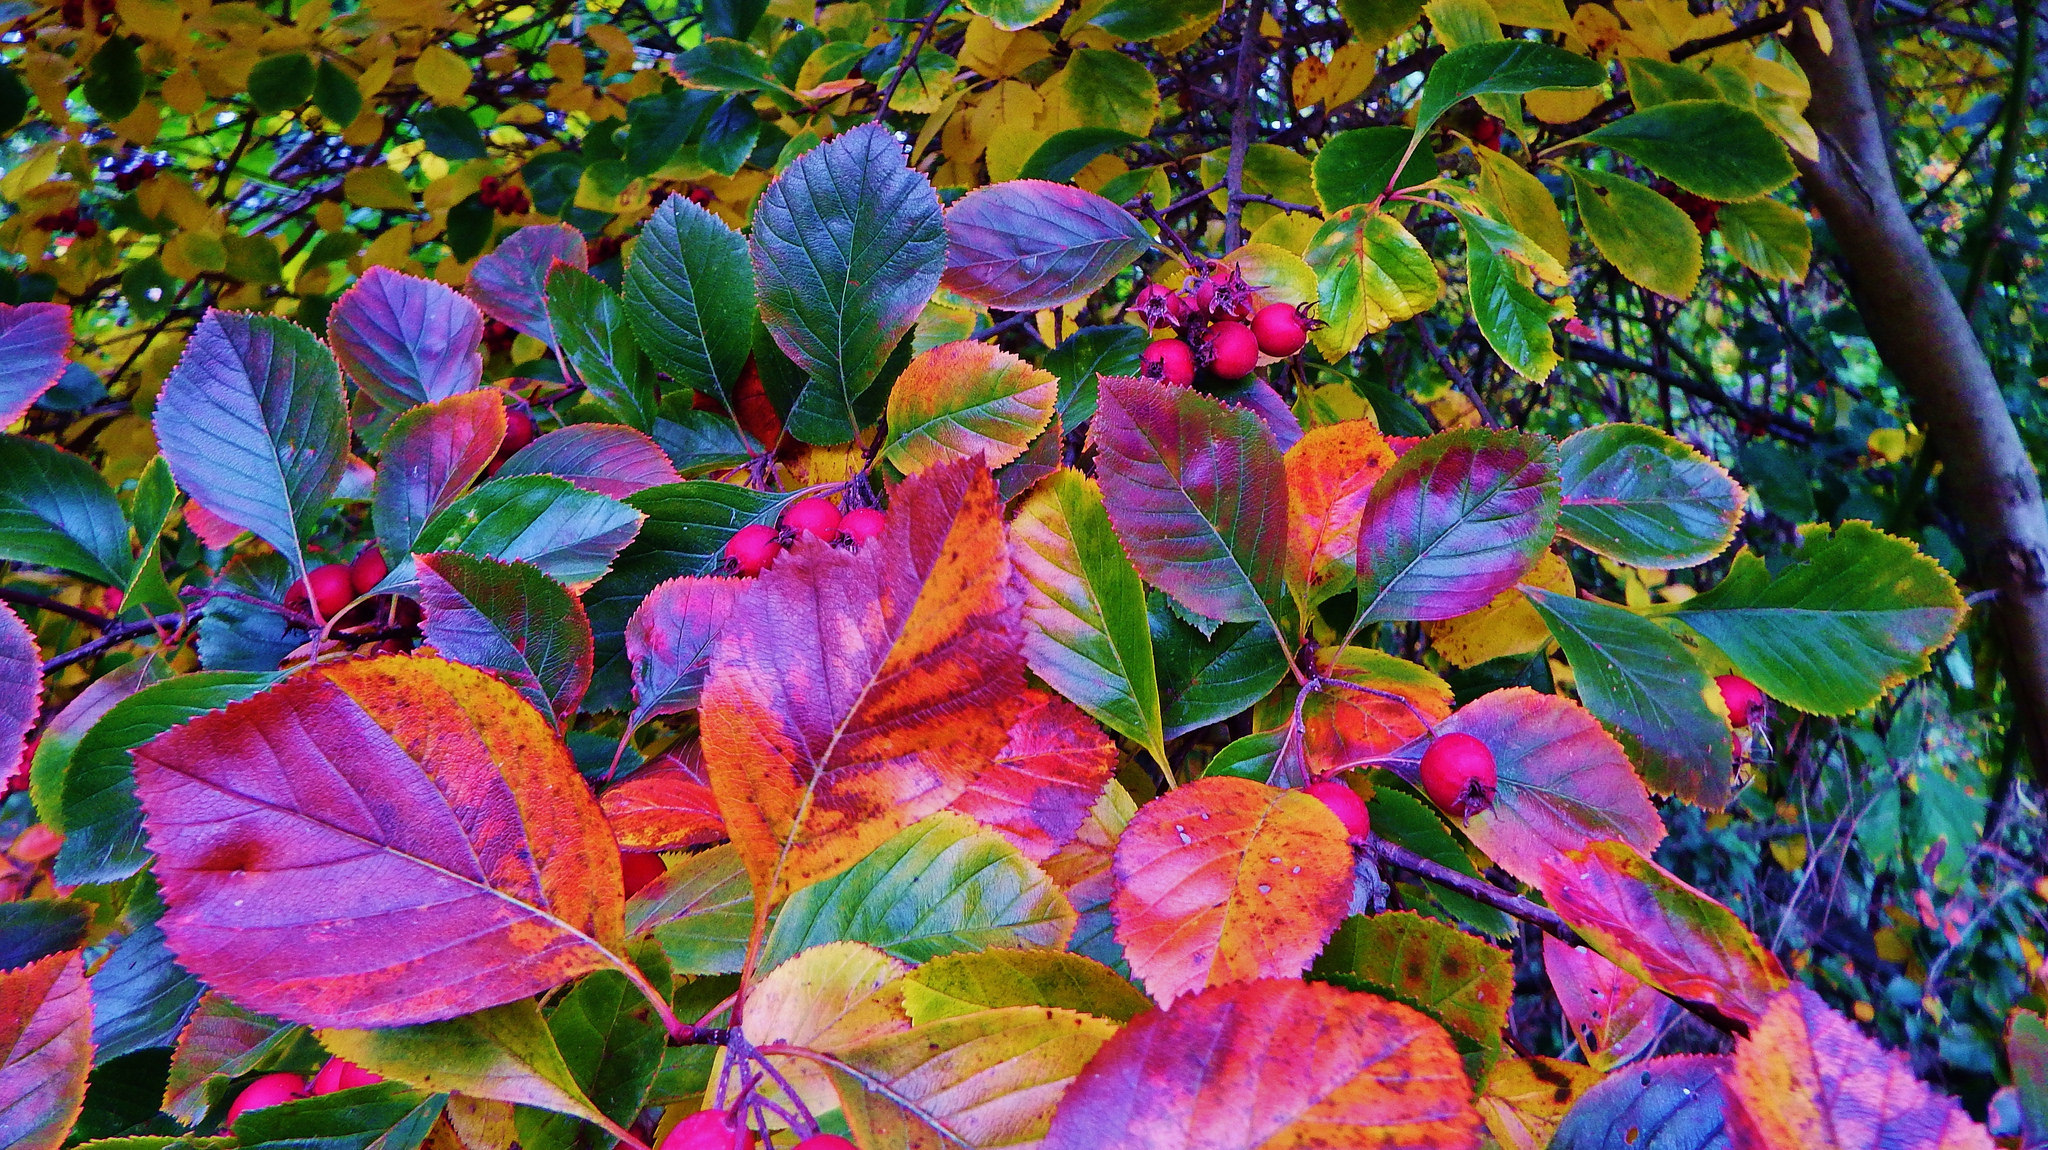 Скачать обои бесплатно Осень, Лист, Земля/природа картинка на рабочий стол ПК